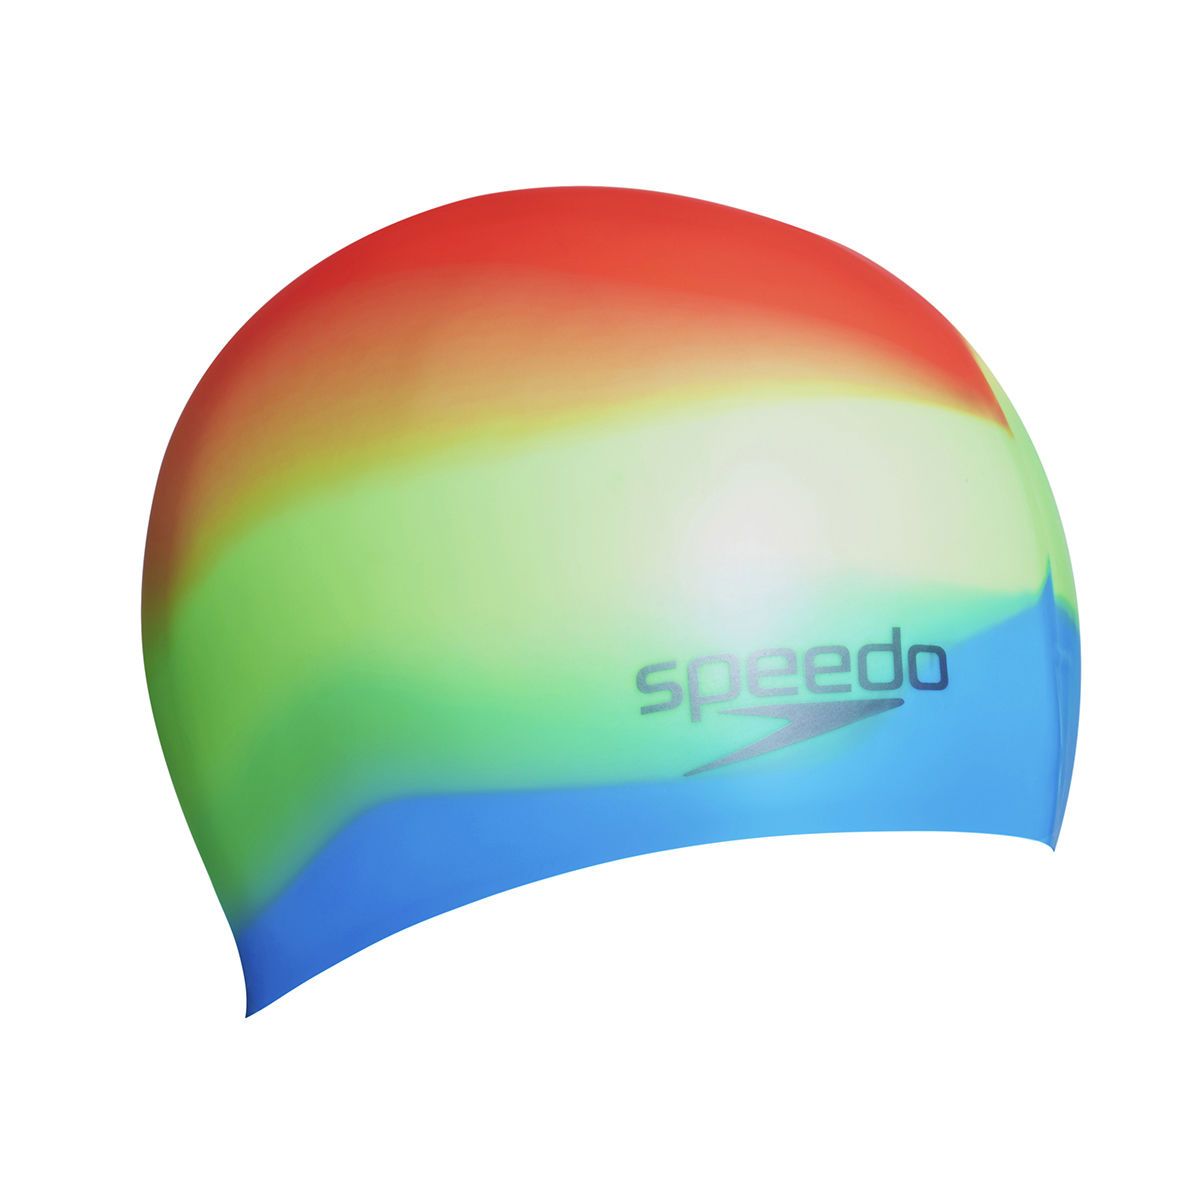  Speedo - Nón Bơi Người Lớn Multi Colour Silicone AU (Green/Blue) Chống Thấm Nước 